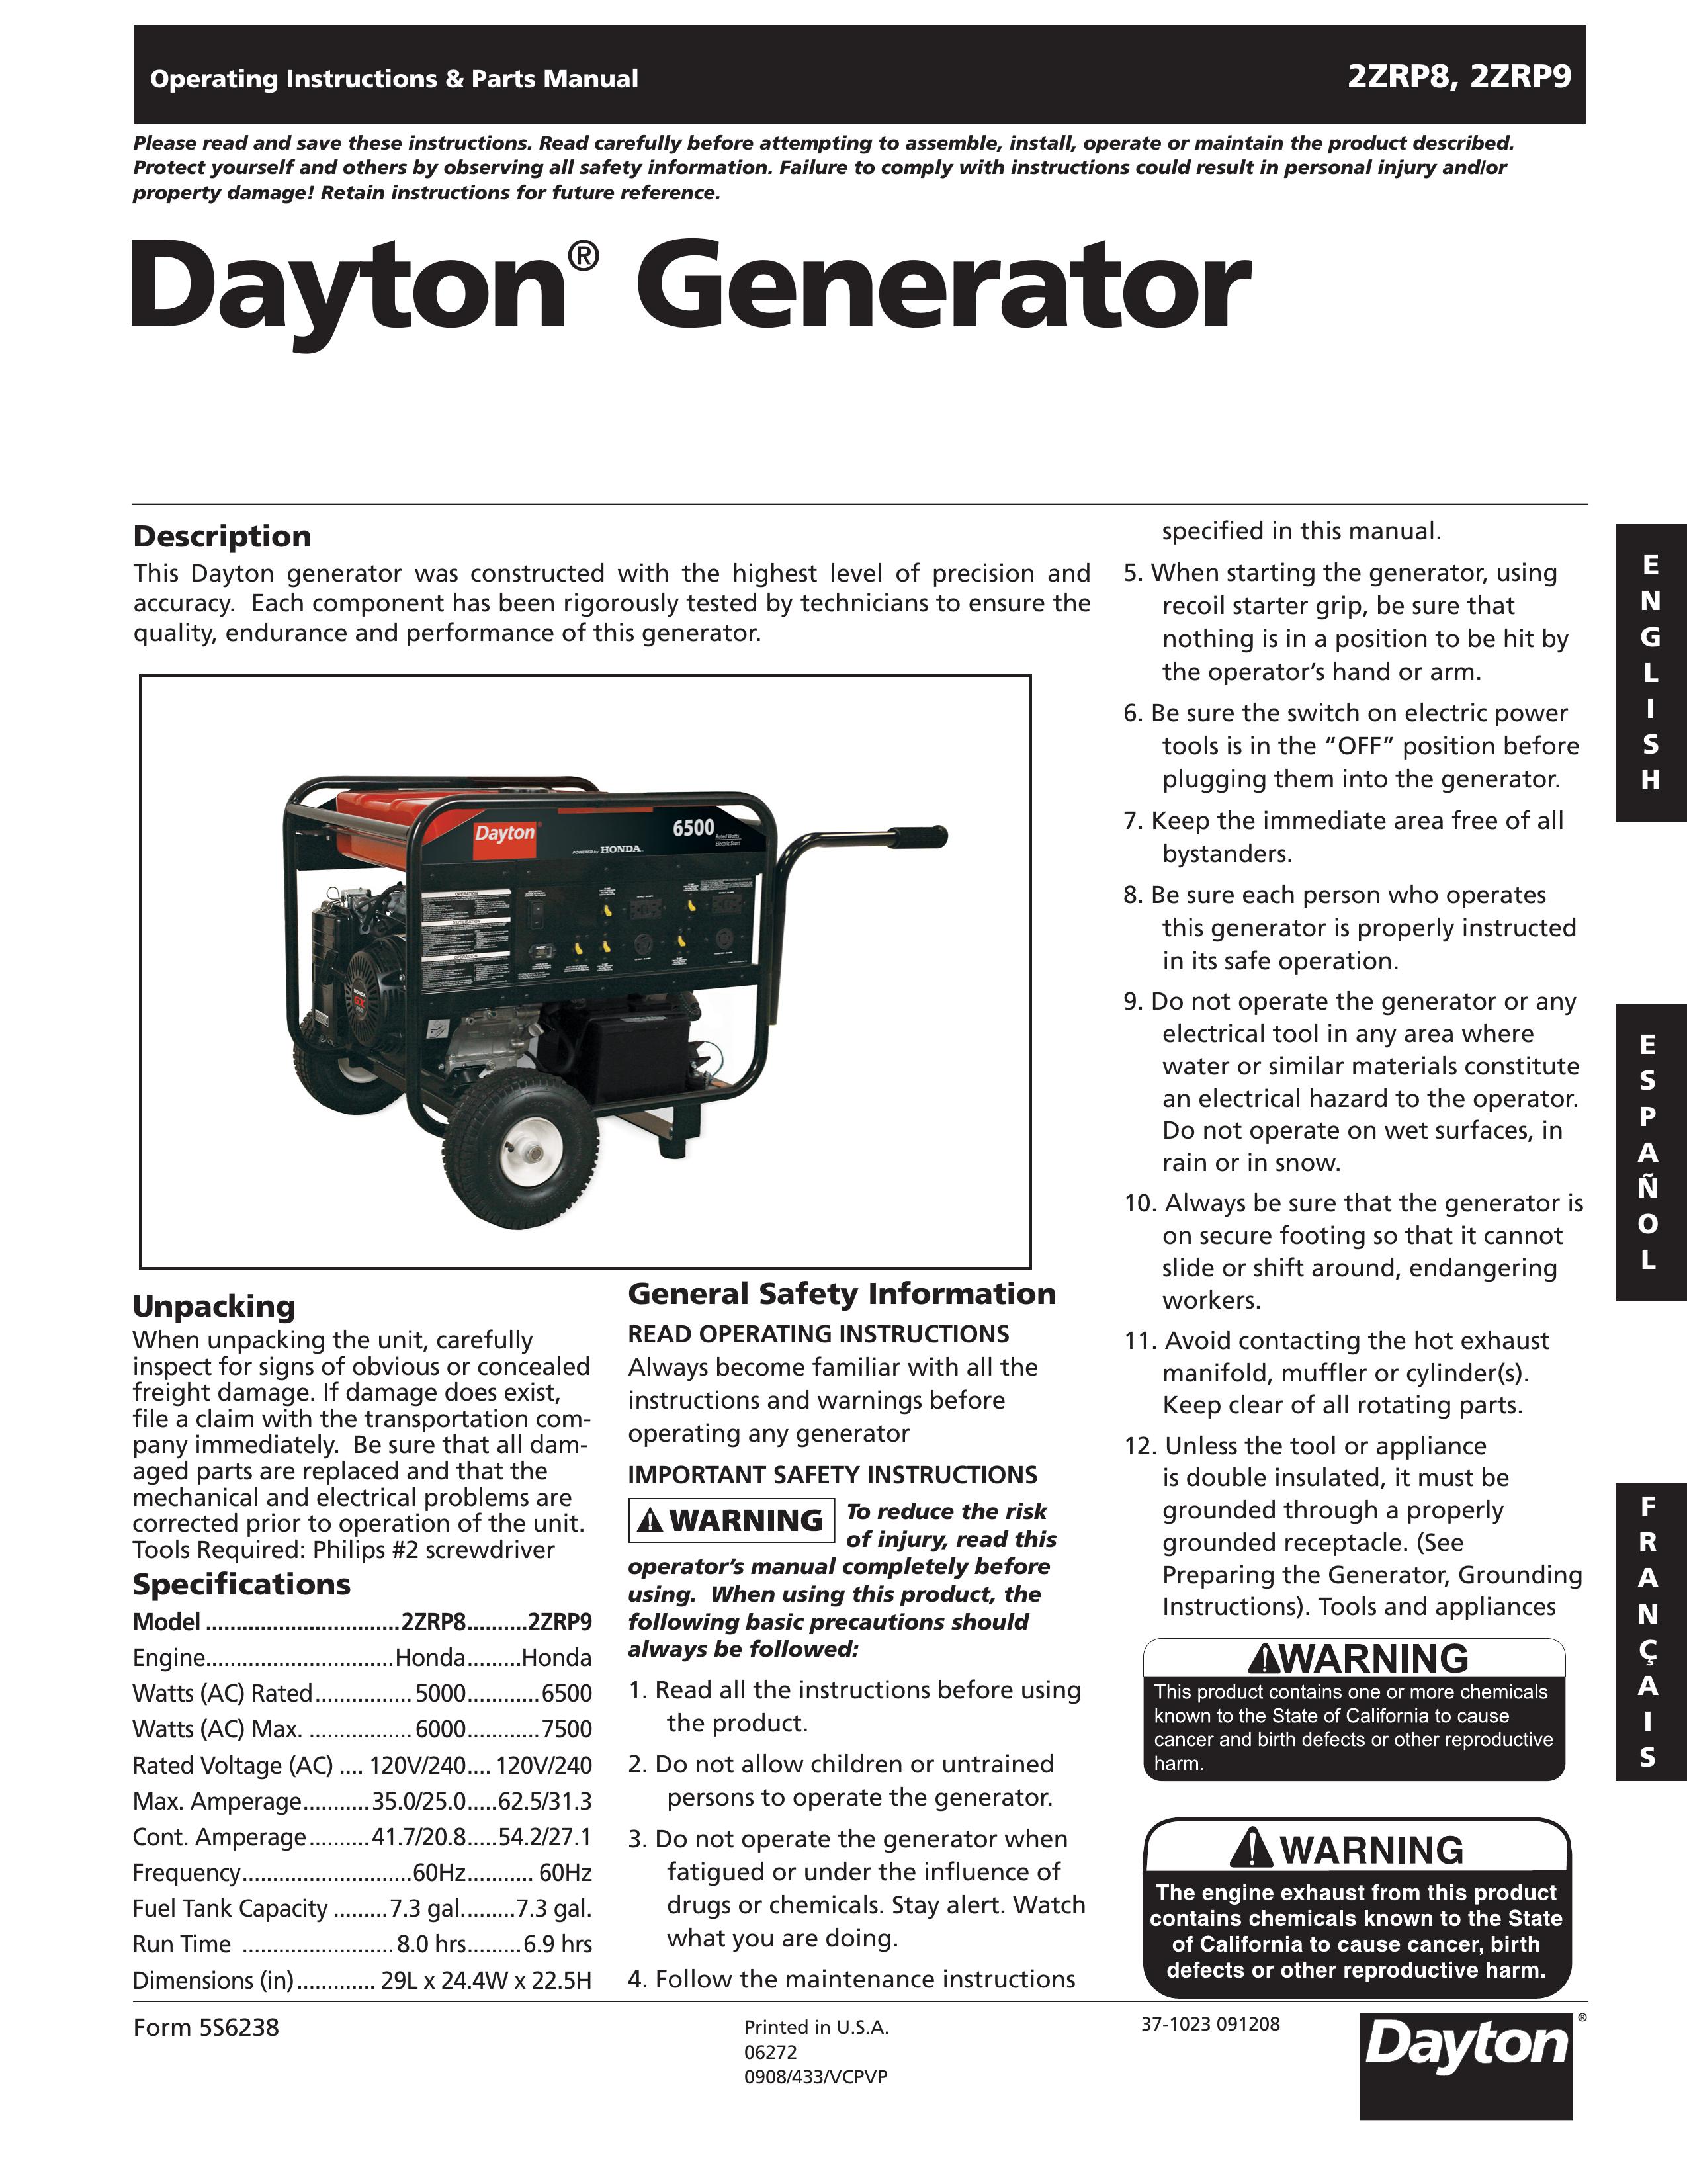 Dayton 2ZRP9 Portable Generator User Manual